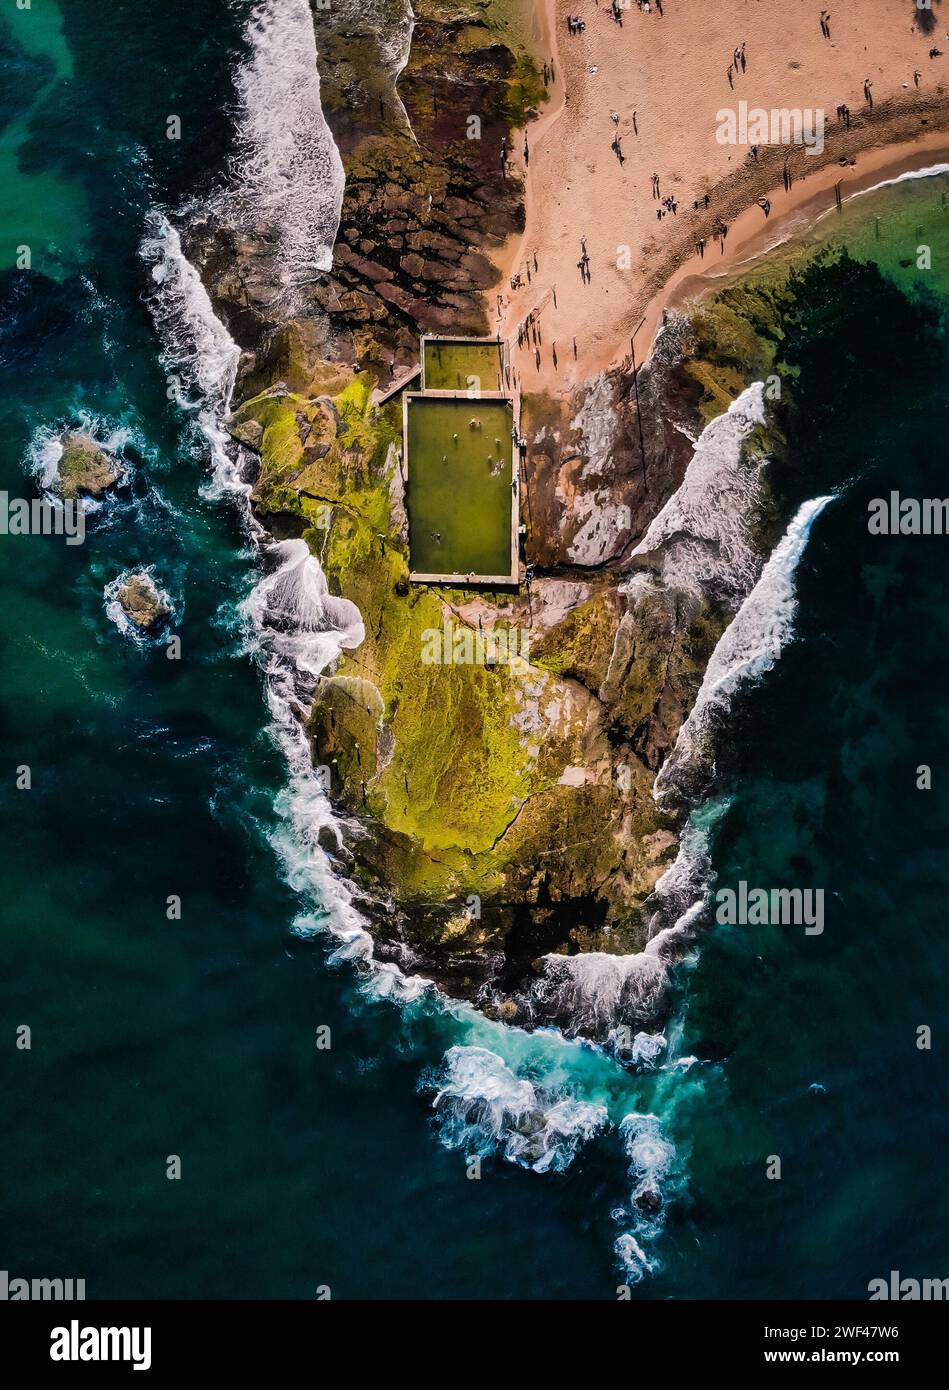 Maîtrise aérienne : le Mona Vale Rock Pool de Sydney, un havre côtier entouré par l'étreinte des vagues Turquoise Banque D'Images